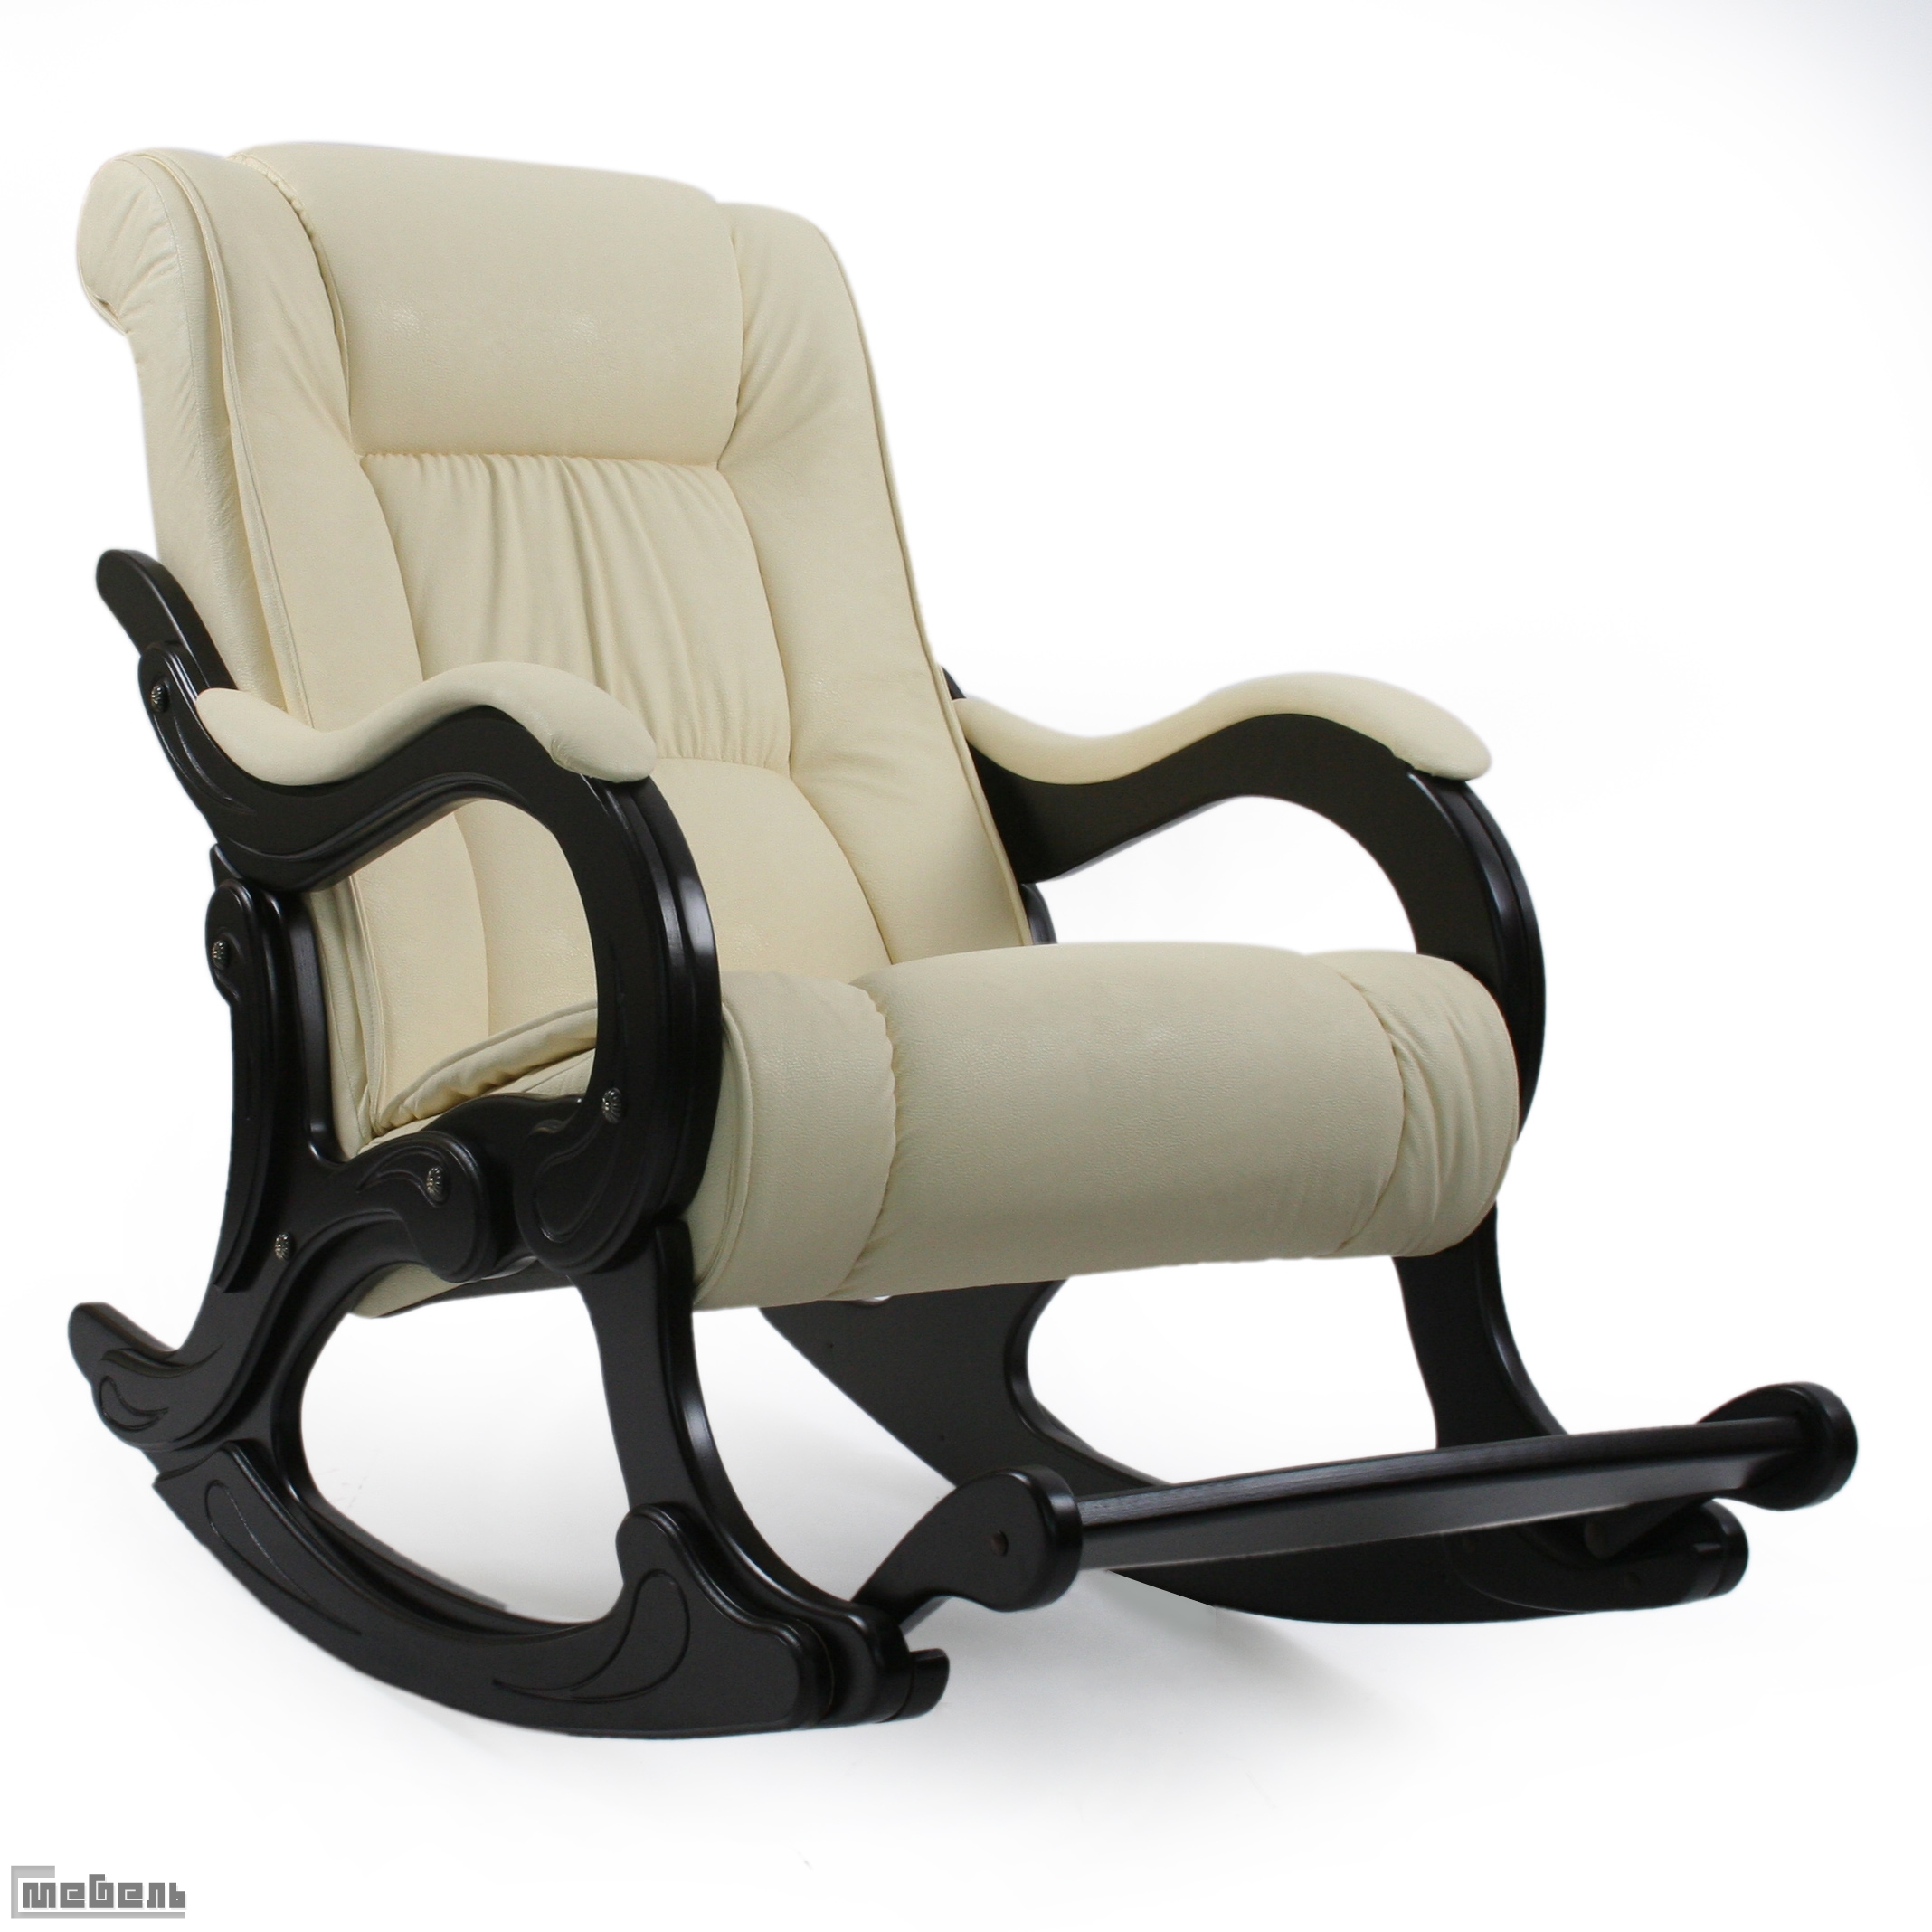 Кресло-качалка, модель 77 (013.0077), экокожа: "Dundi 112"